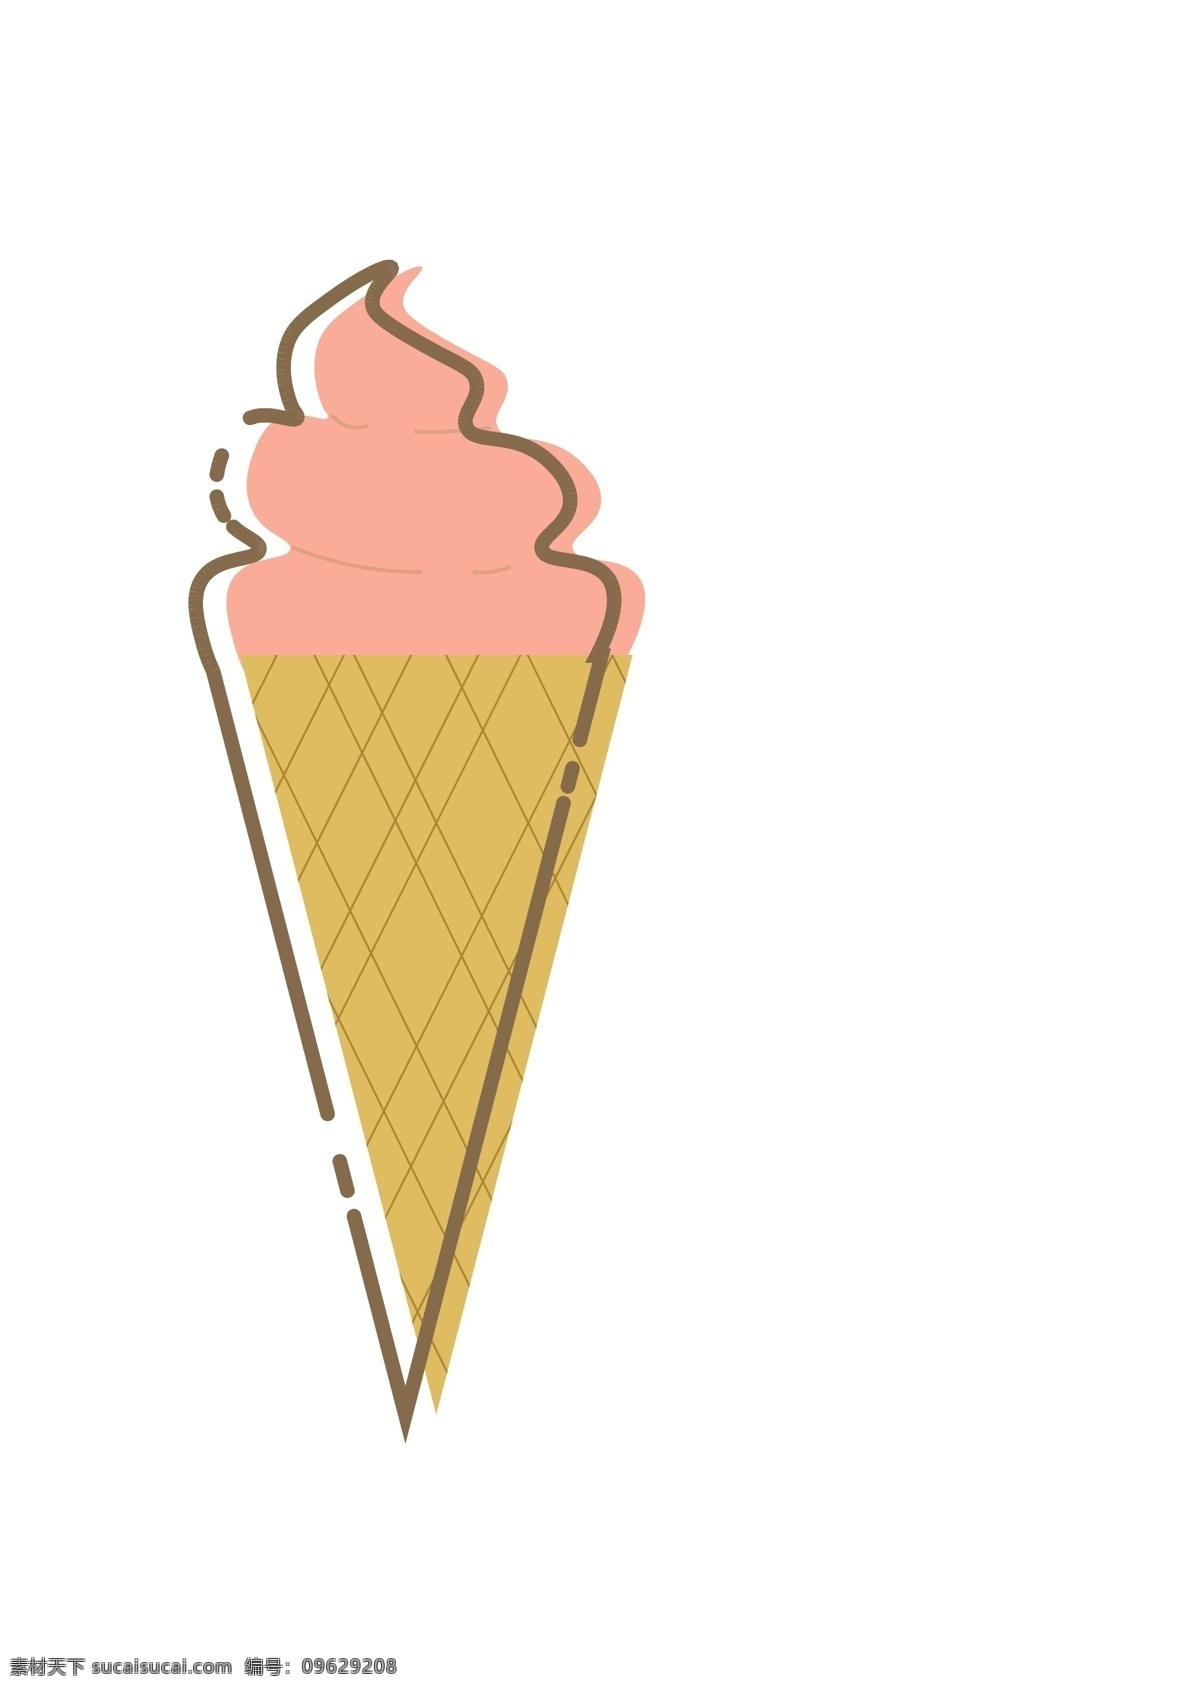 冰淇淋 冰棍 冰棒 mbe 可爱 卡通 简约 夏天 图标 小图标